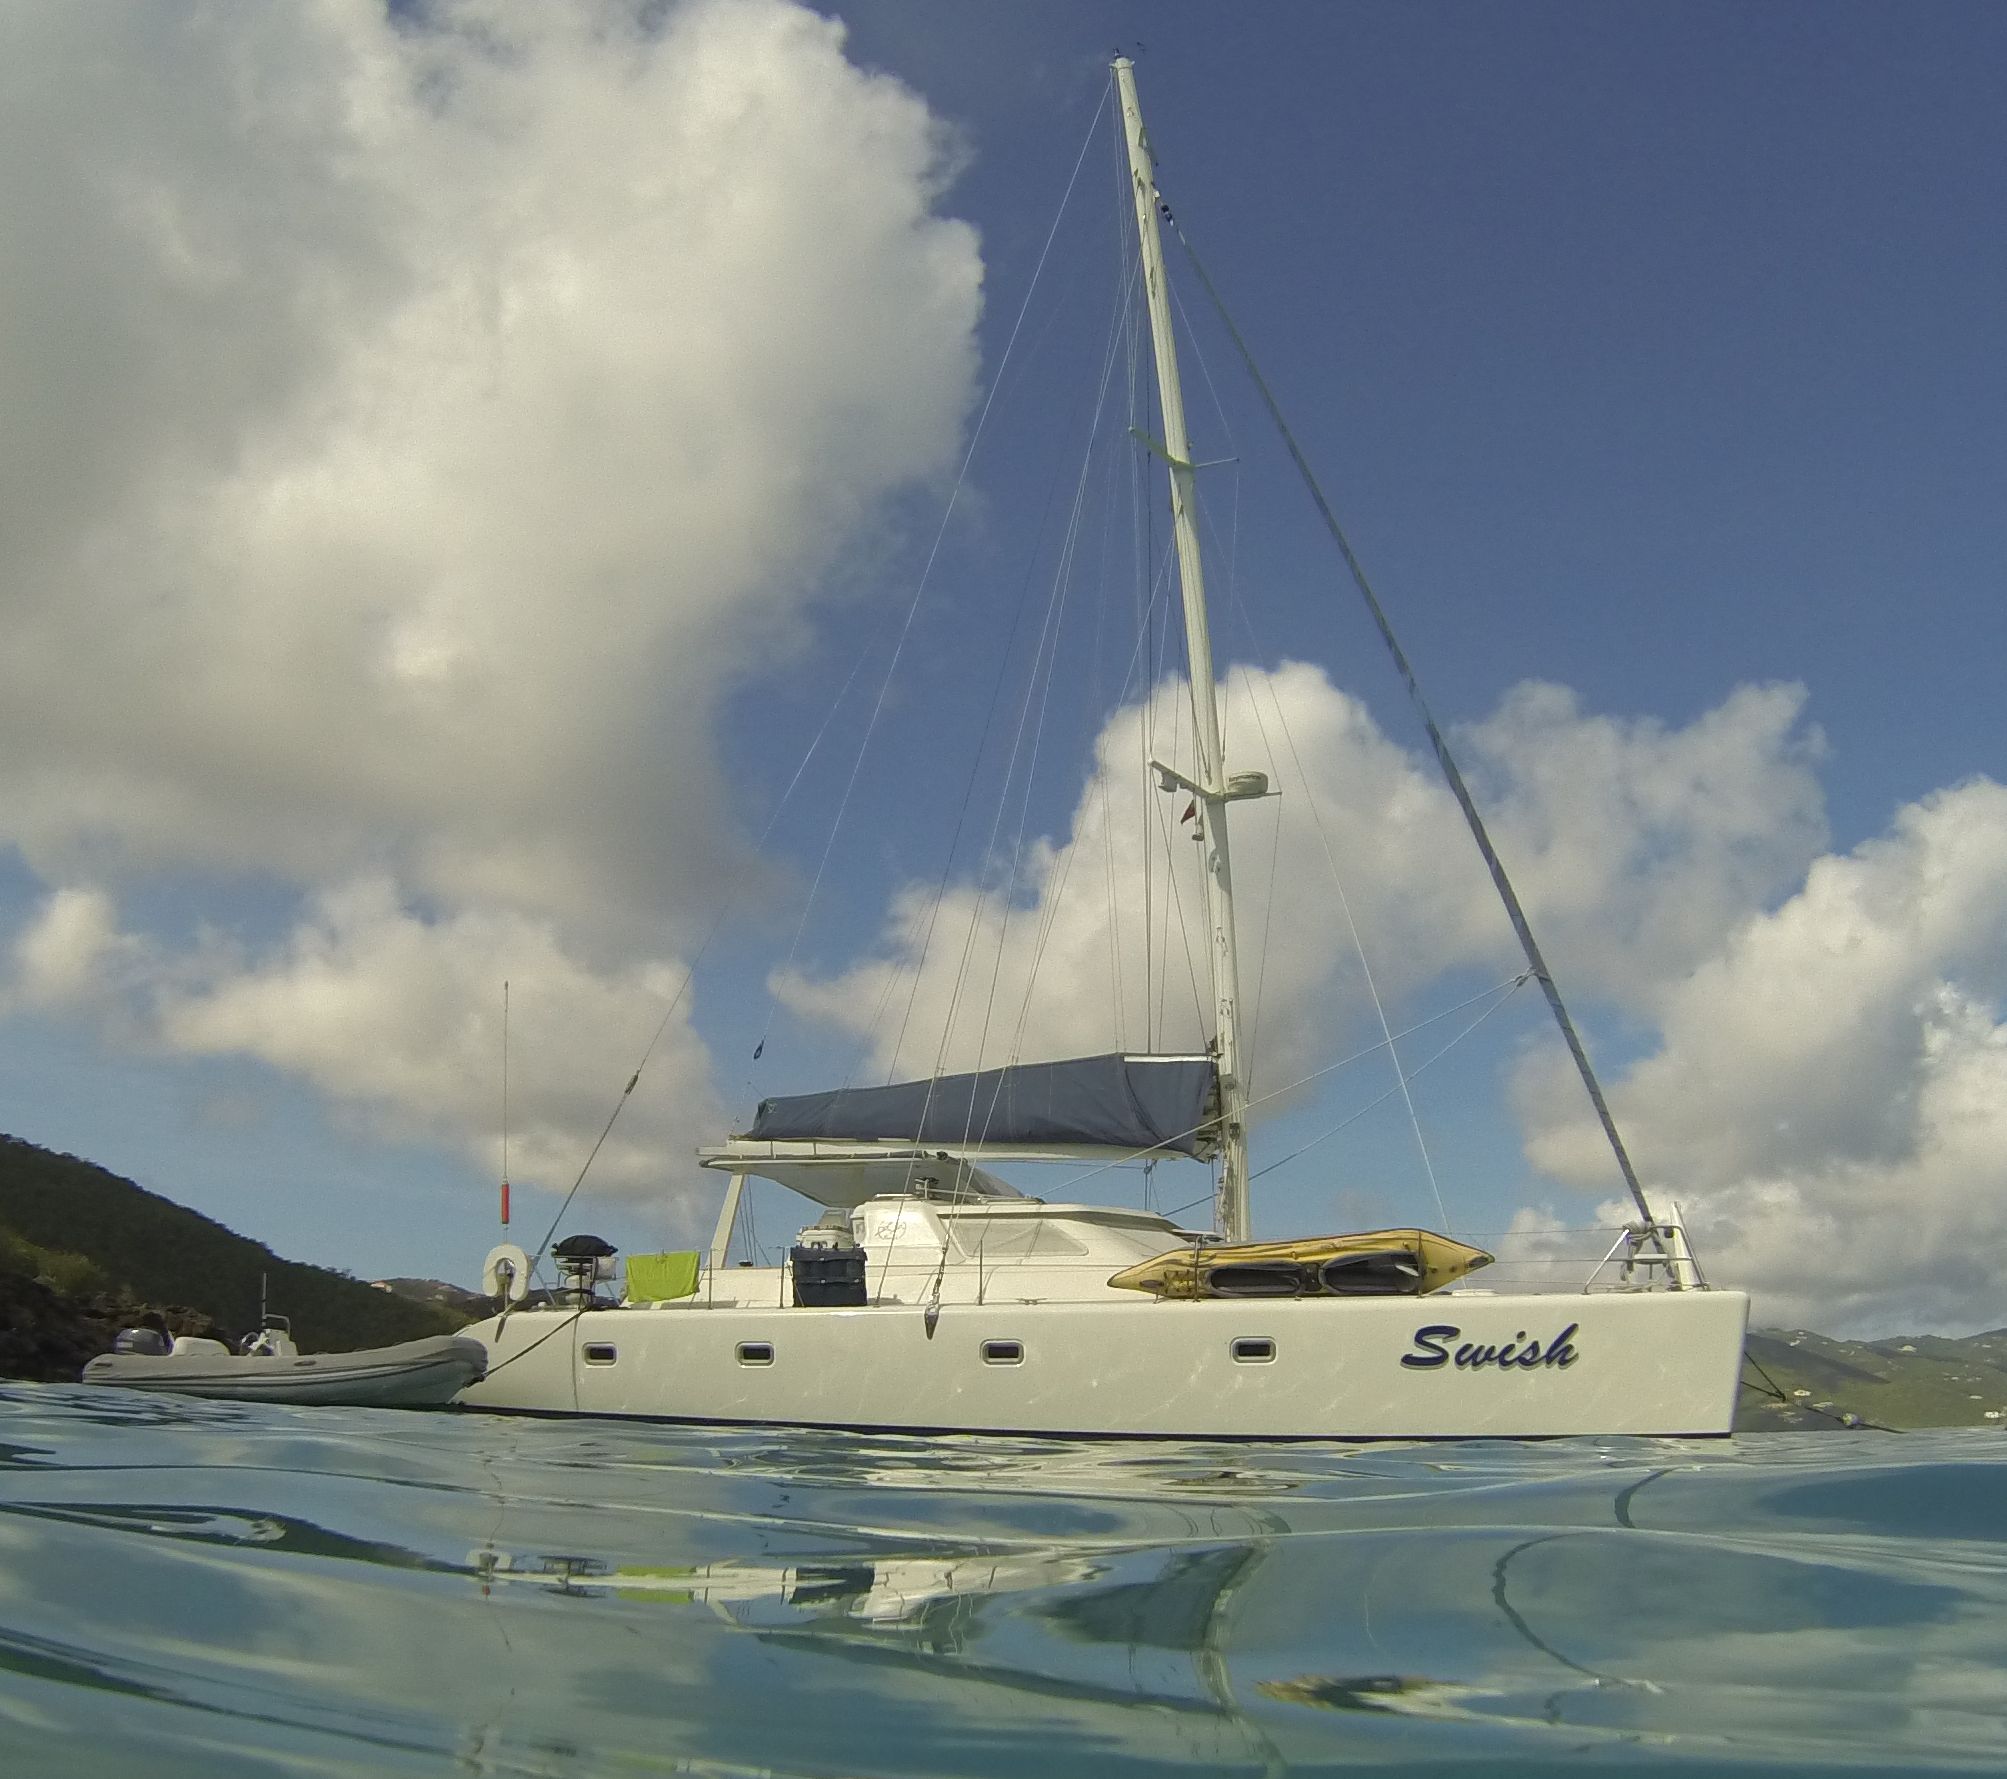 Scuba Dive Sailboat Charter – Special